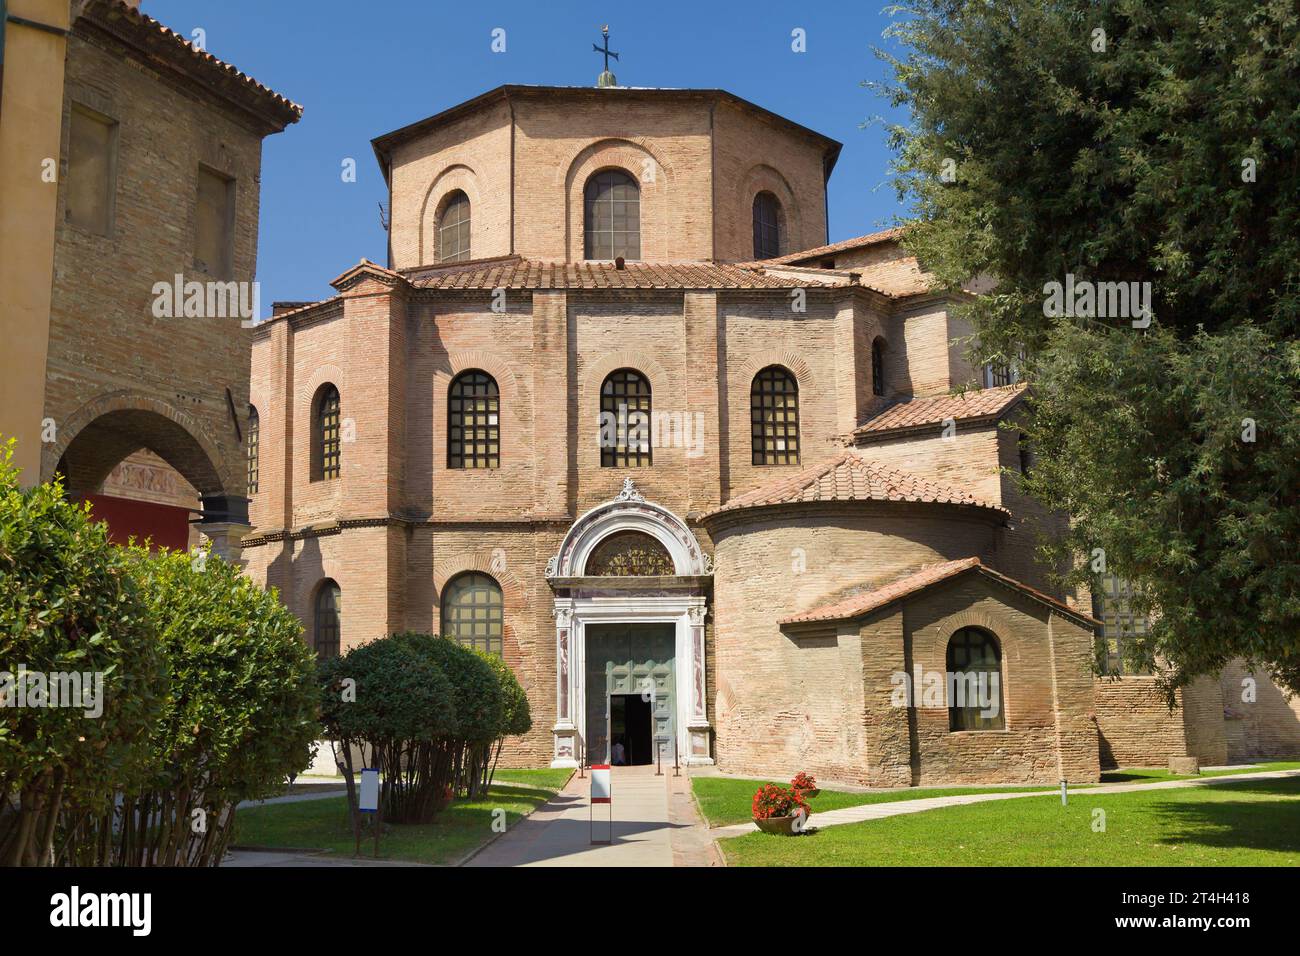 Ingresso alla chiesa di San vitale a Ravenna, Emilia-Romagna, Italia. Foto Stock